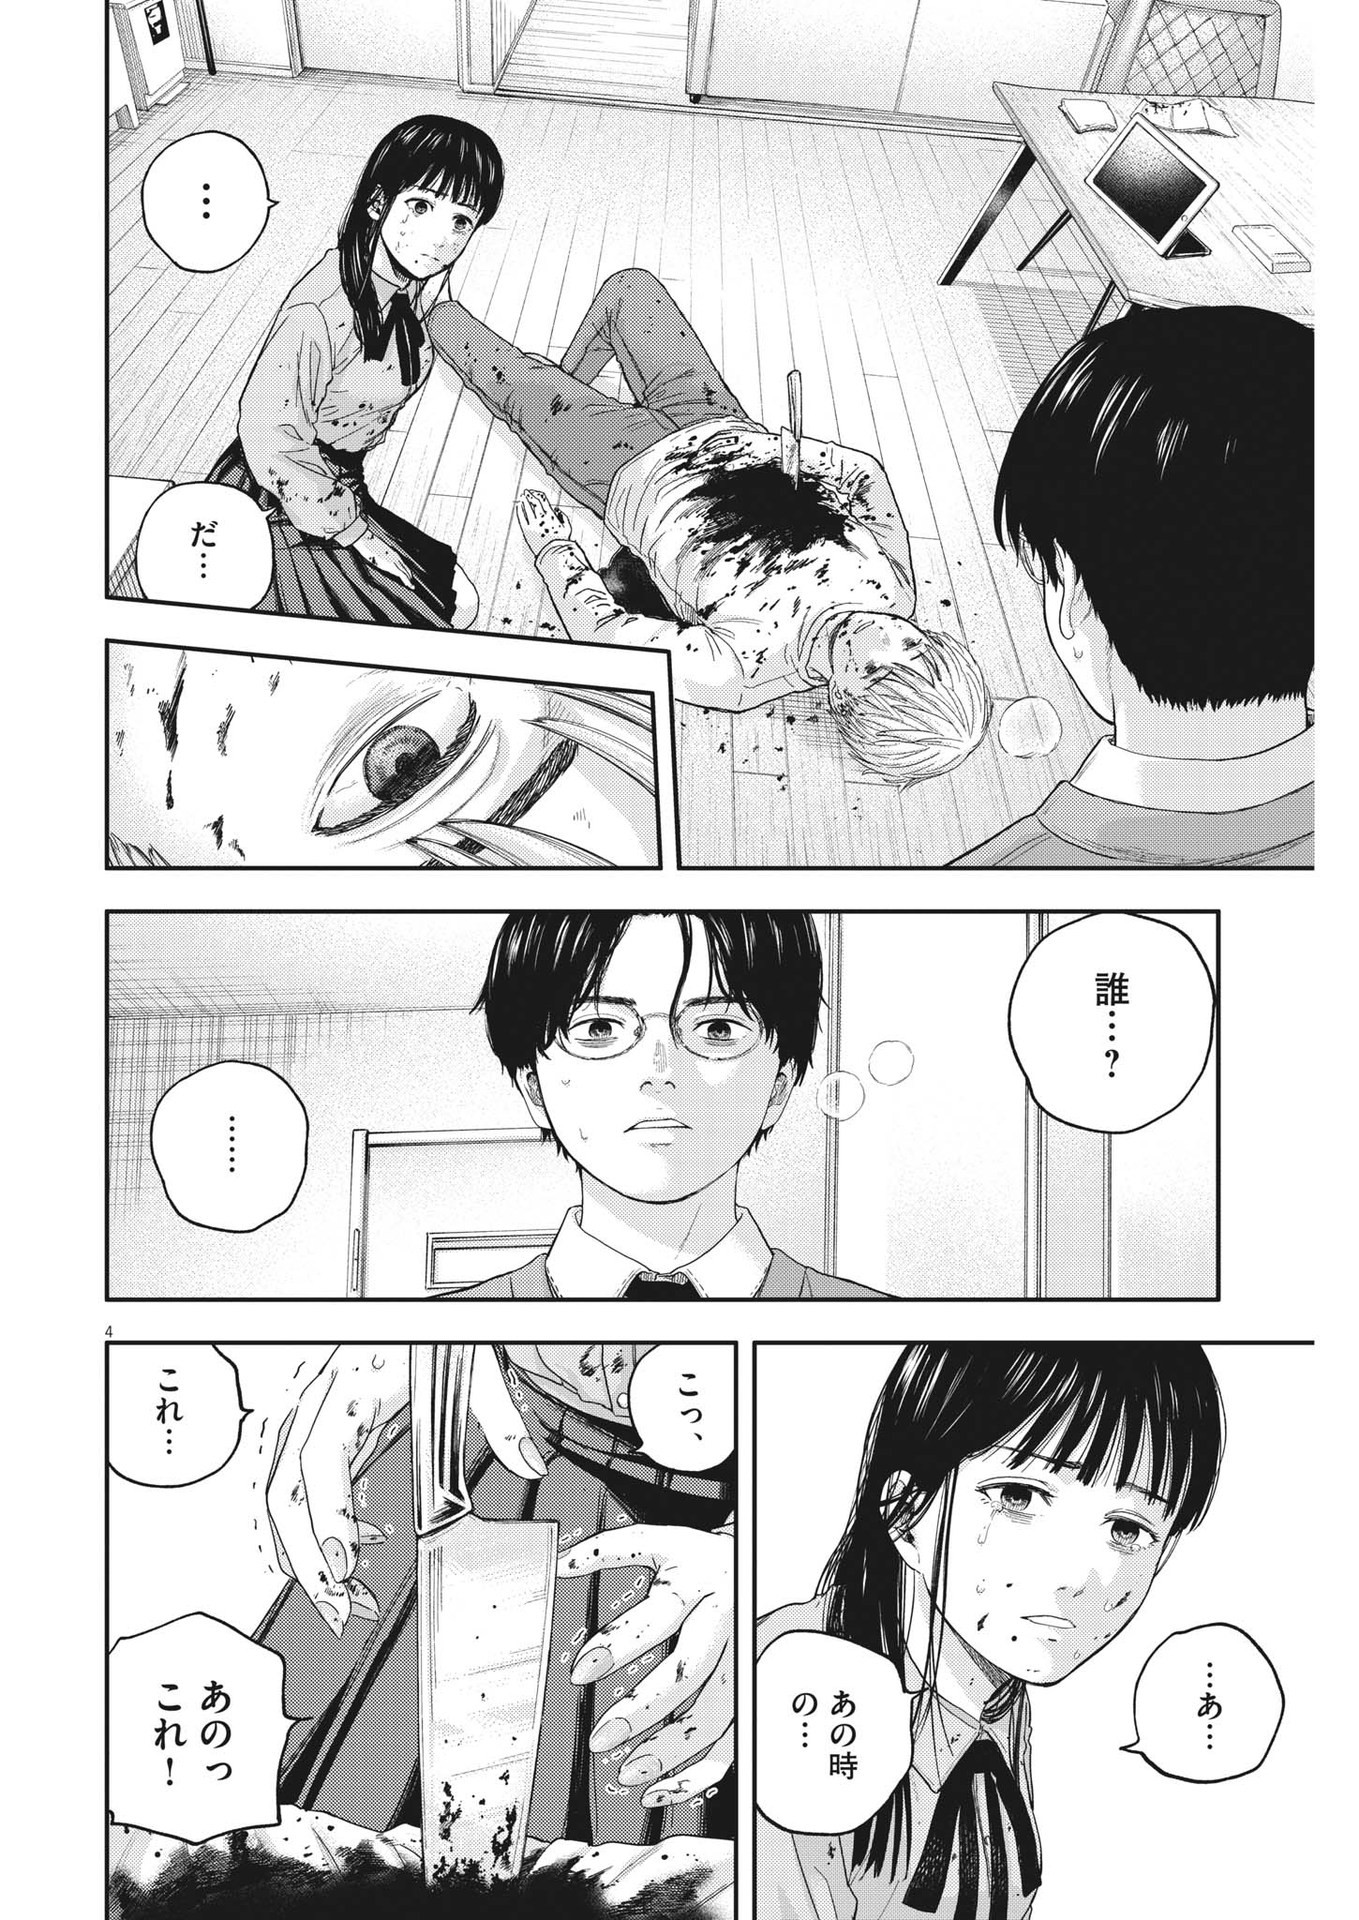 Yumenashi-sensei no Shinroshidou - Chapter 17 - Page 4